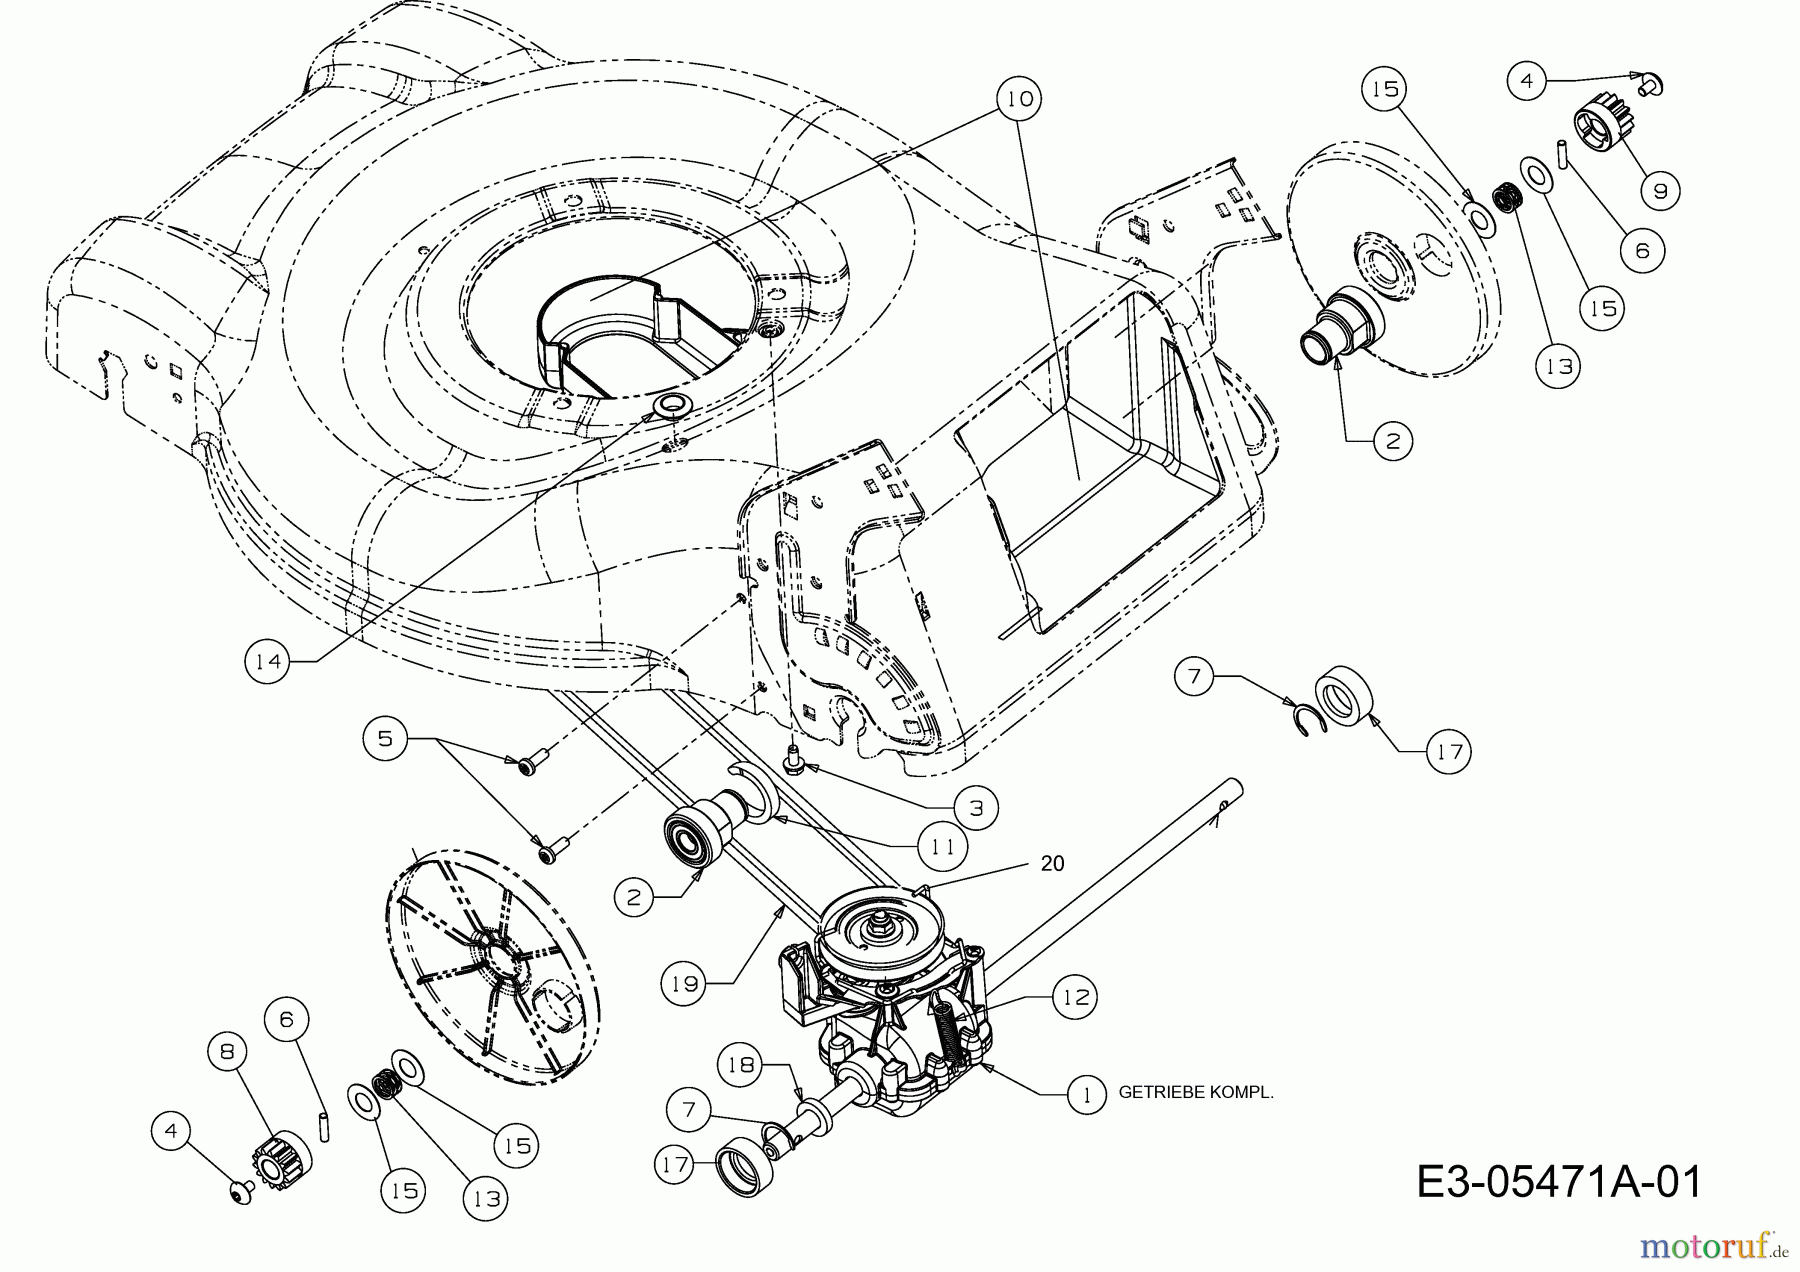  MTD Motormäher mit Antrieb 46 SPHM 12D-J5AQ676  (2010) Getriebe